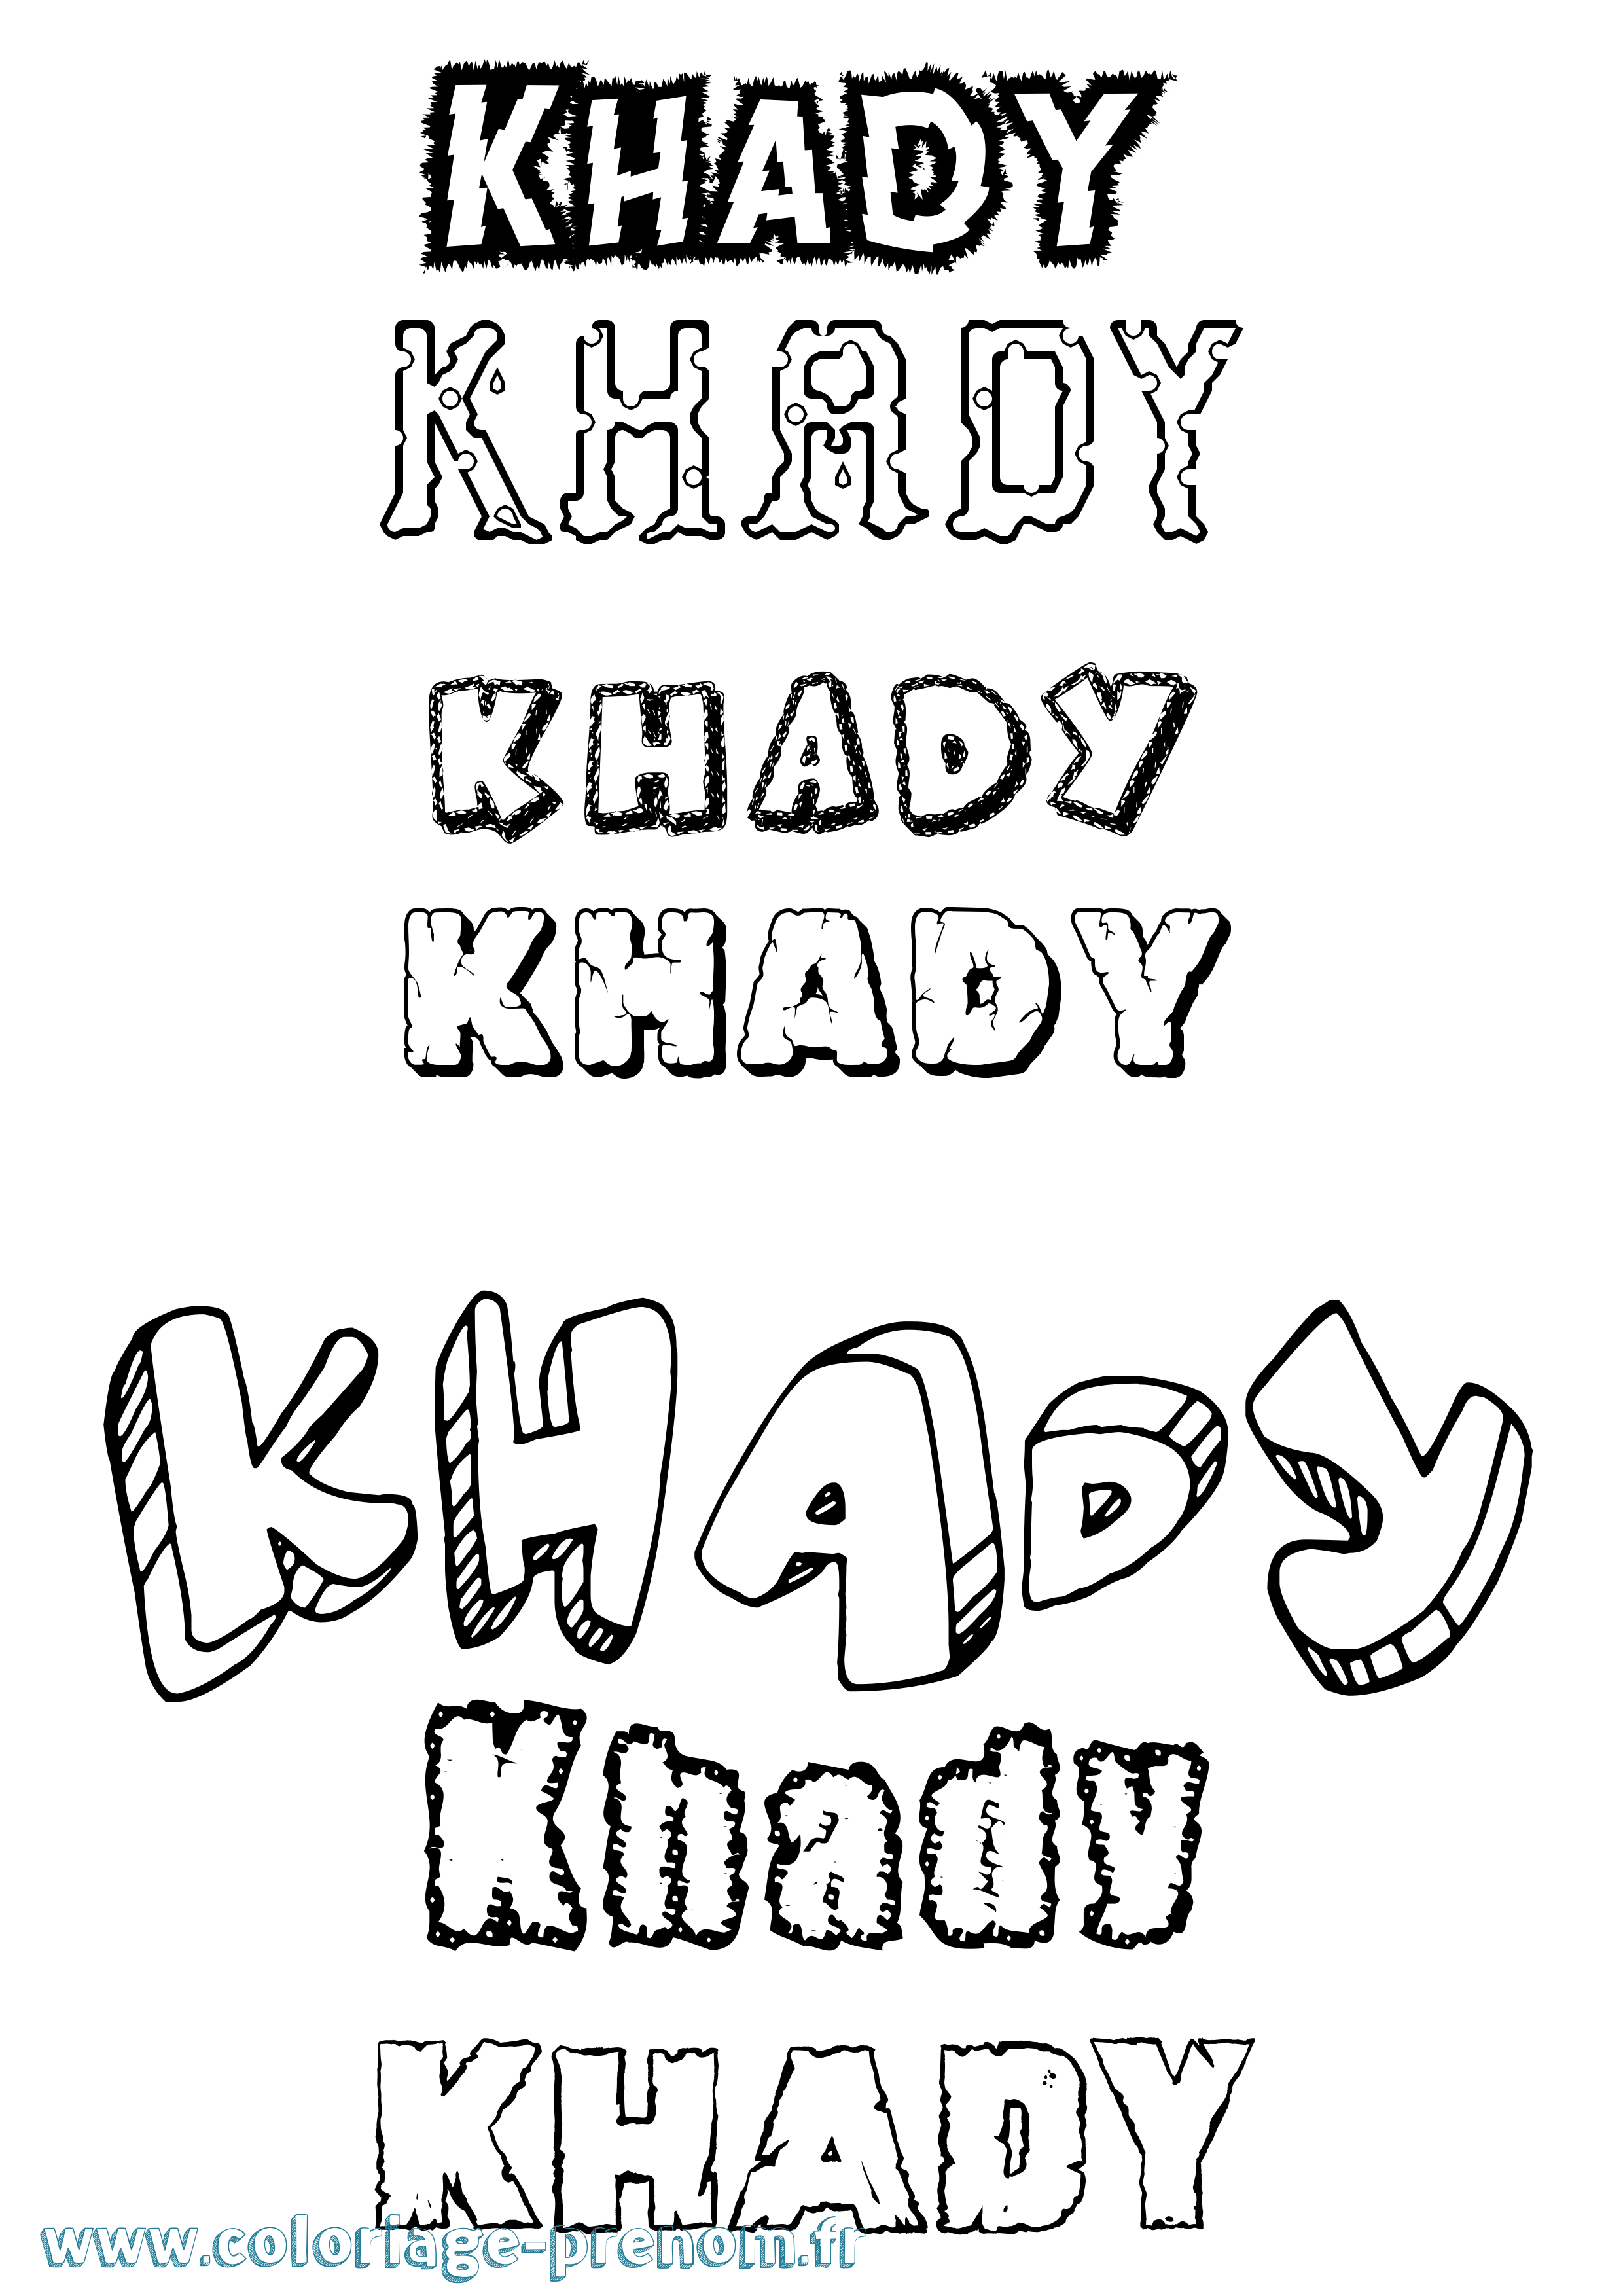 Coloriage prénom Khady